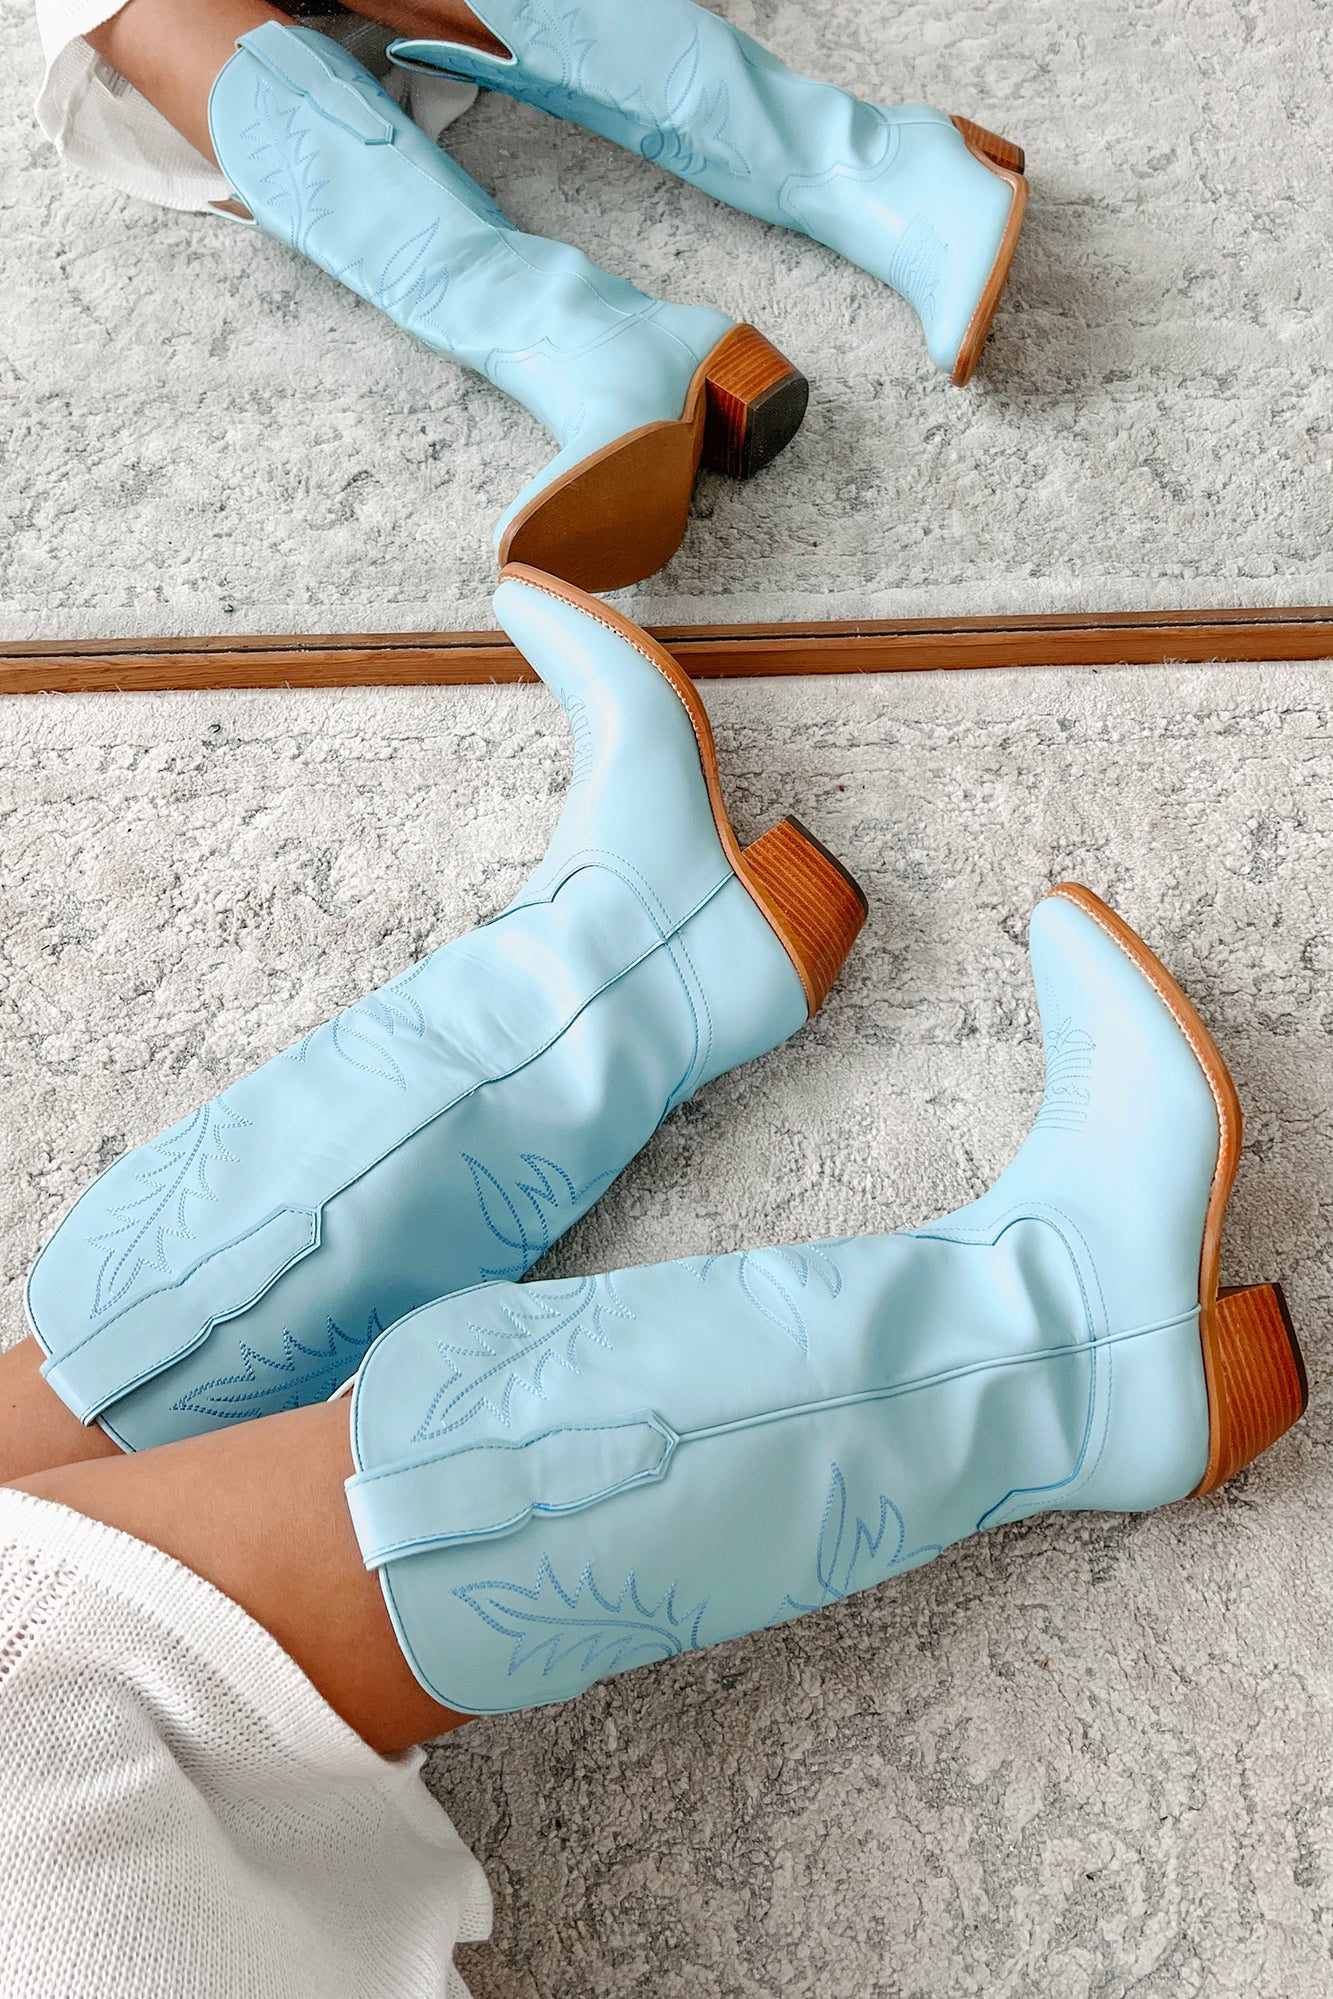 City Slicker Cowboy Boots (Blue) - NanaMacs